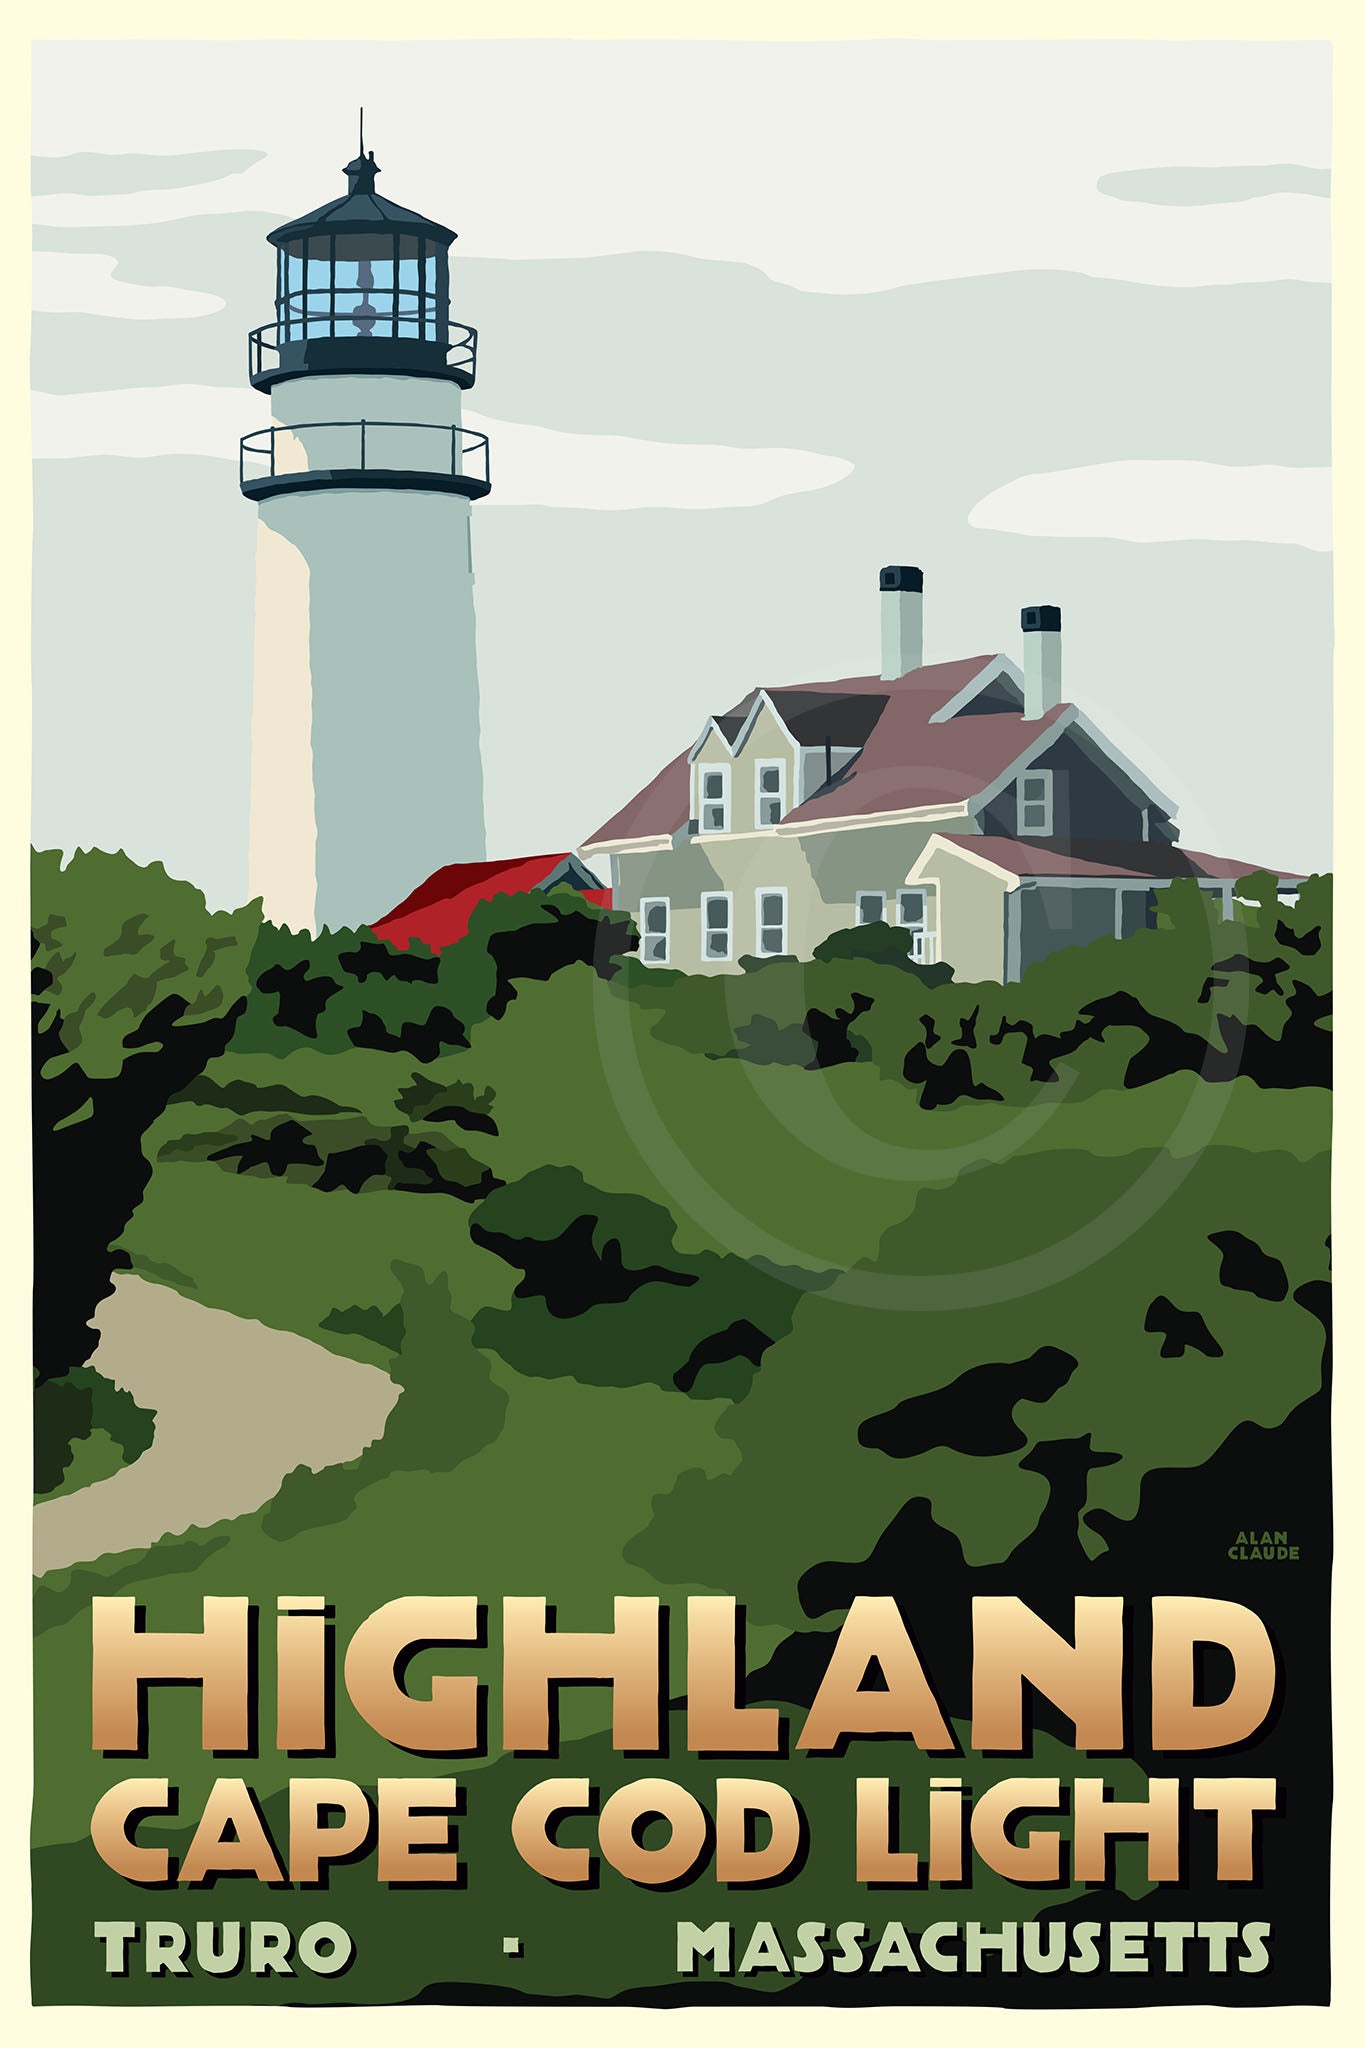 Highland Light Art Print 24" x 36" Travel Poster By Alan Claude - Massachusetts